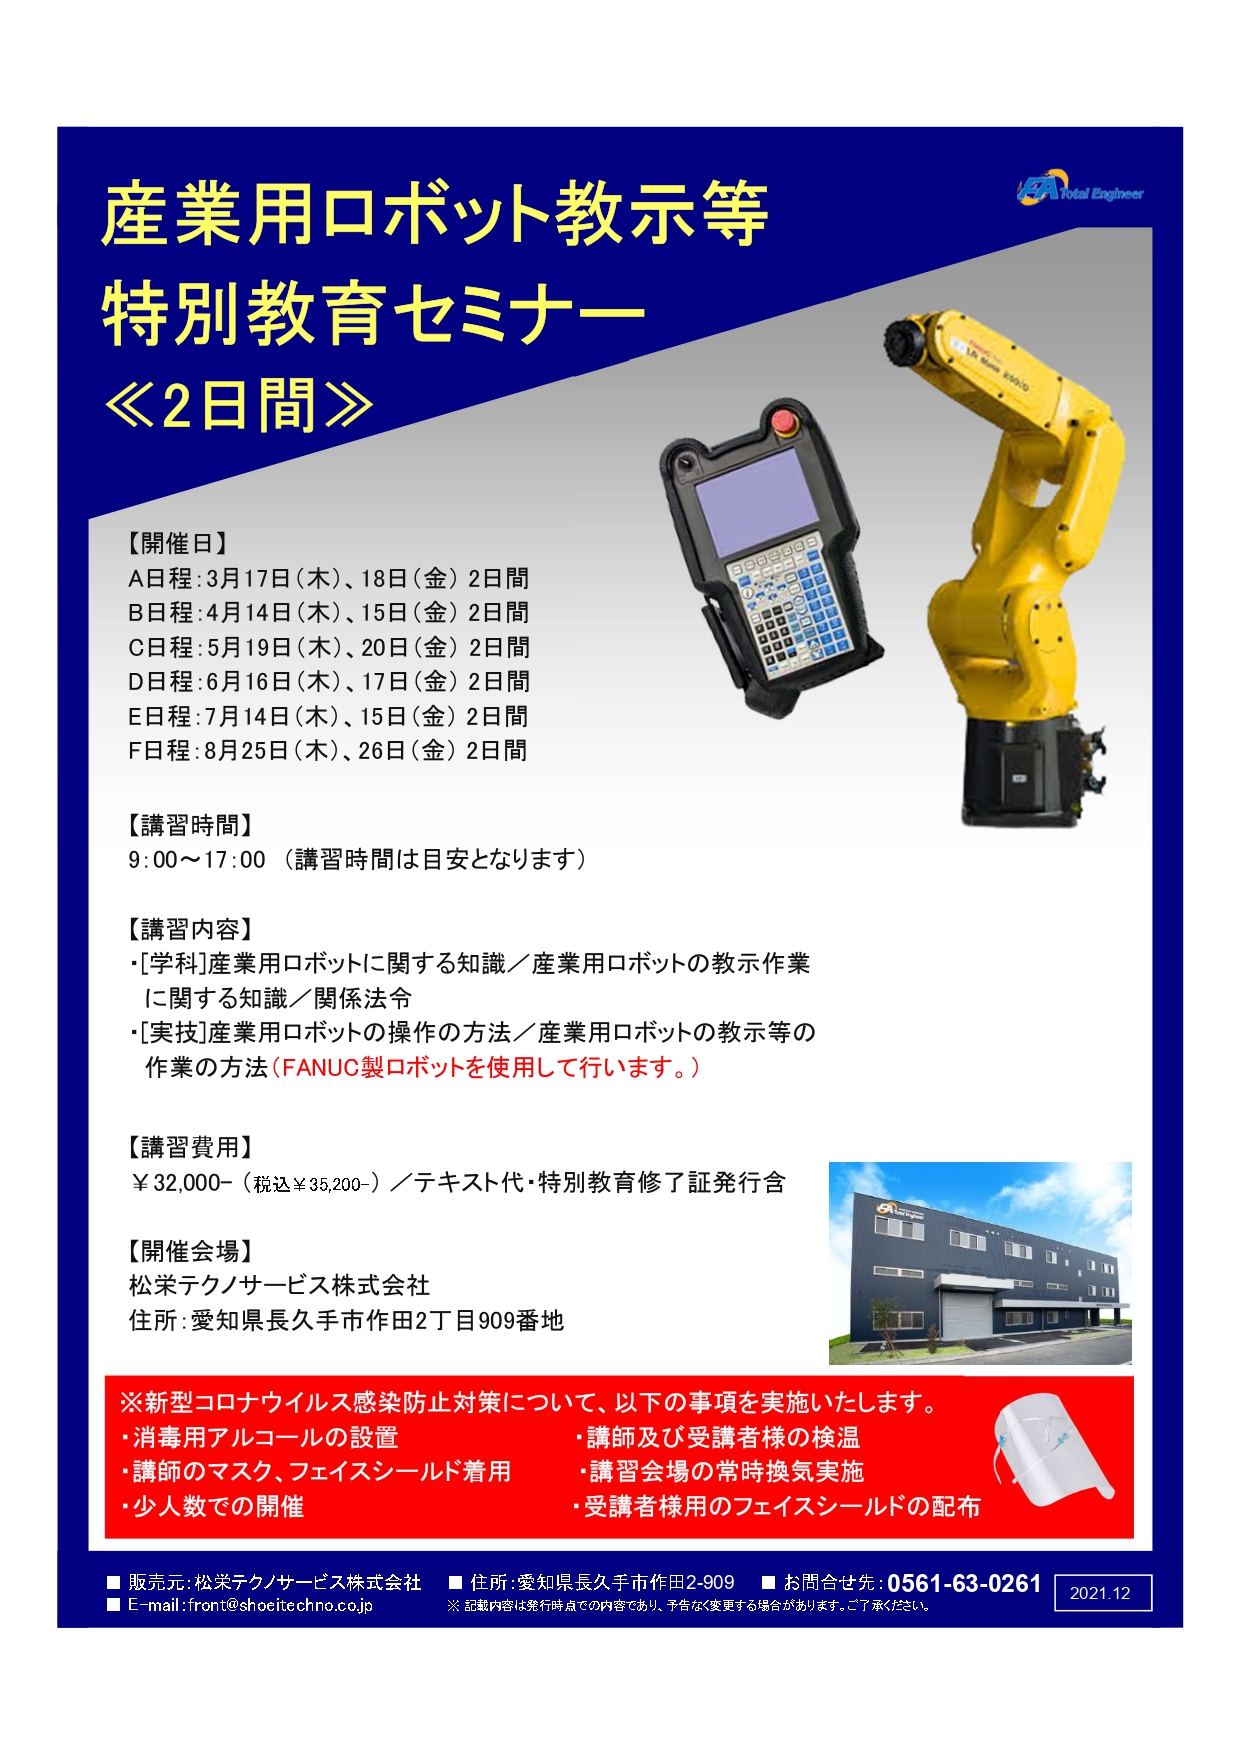 【終了しました】産業用ロボット特別教育（教示等）愛知会場開催のお知らせ【2022年3月～2022年8月】